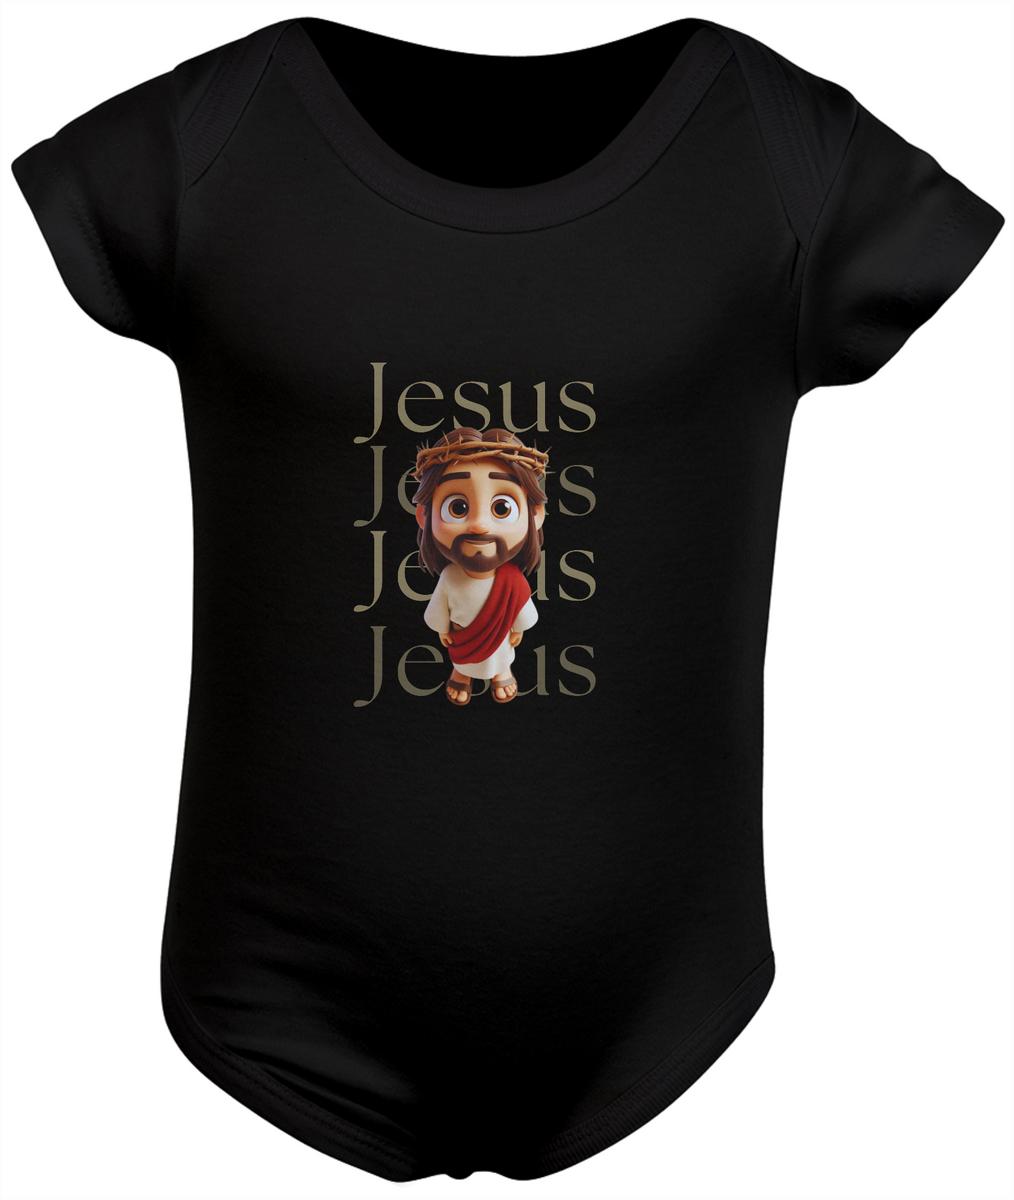 Nome do produto: Jesus - Body Infantil